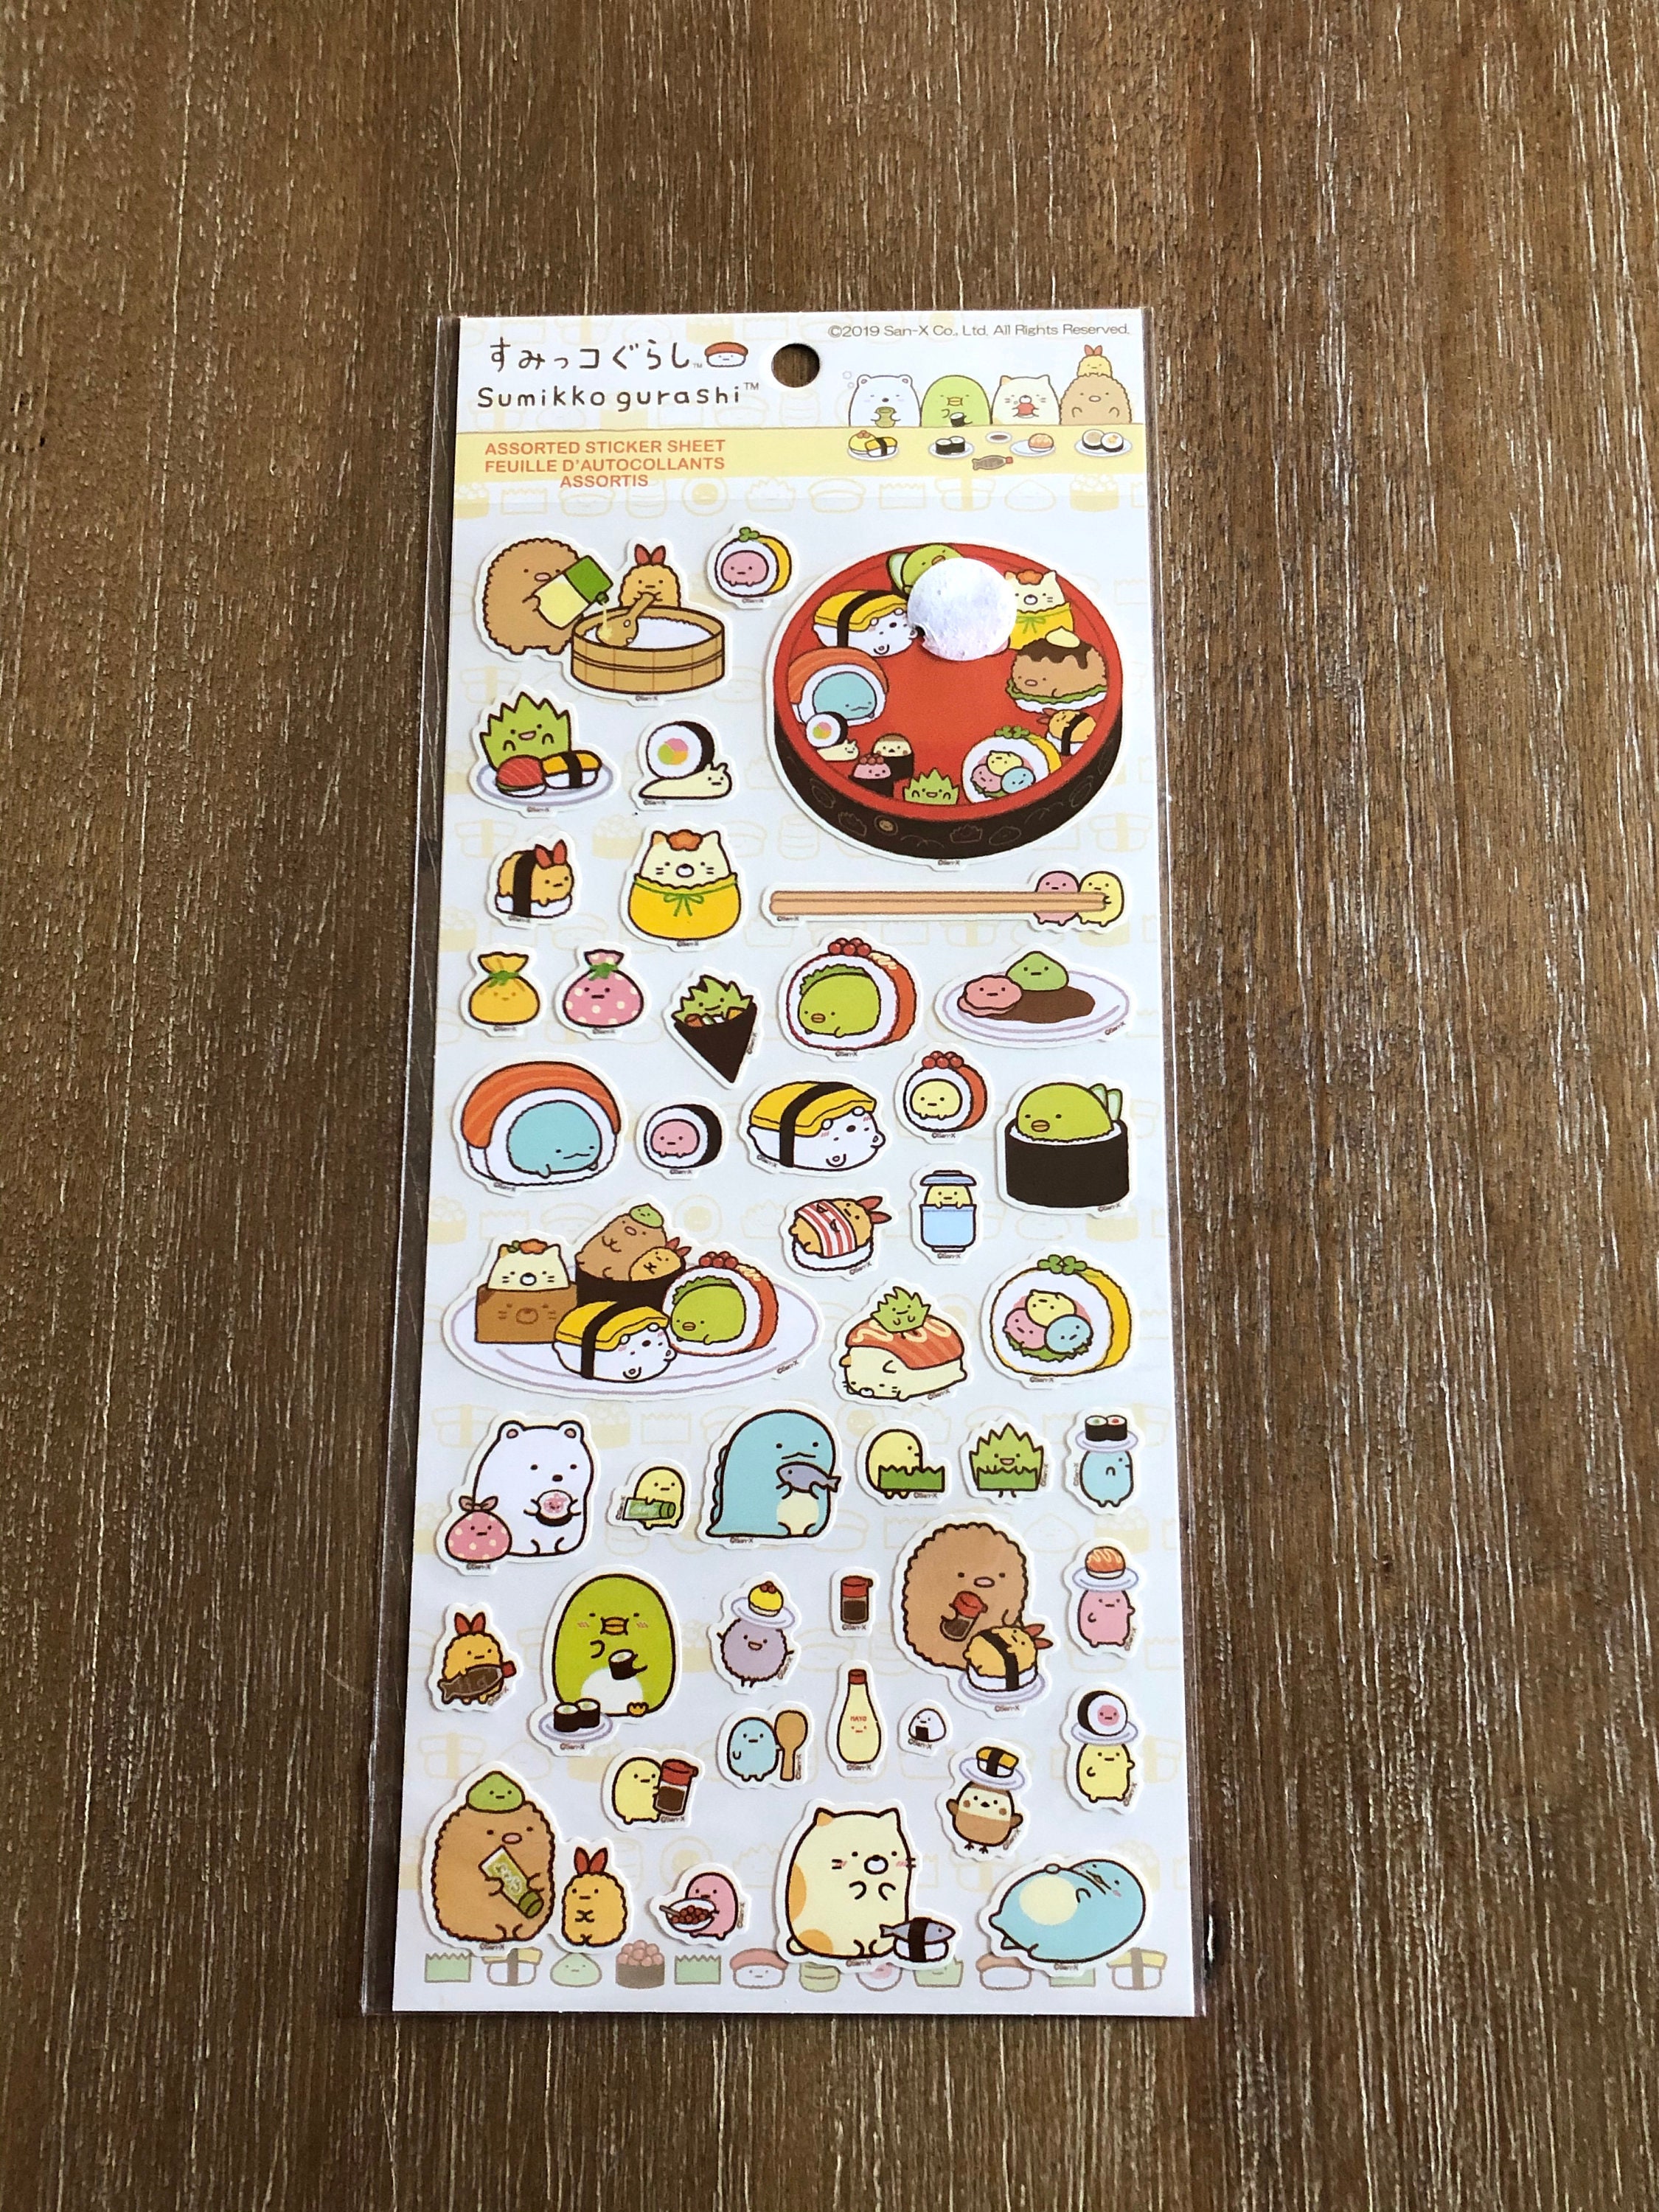 Sumikko Gurashi stickers sheets